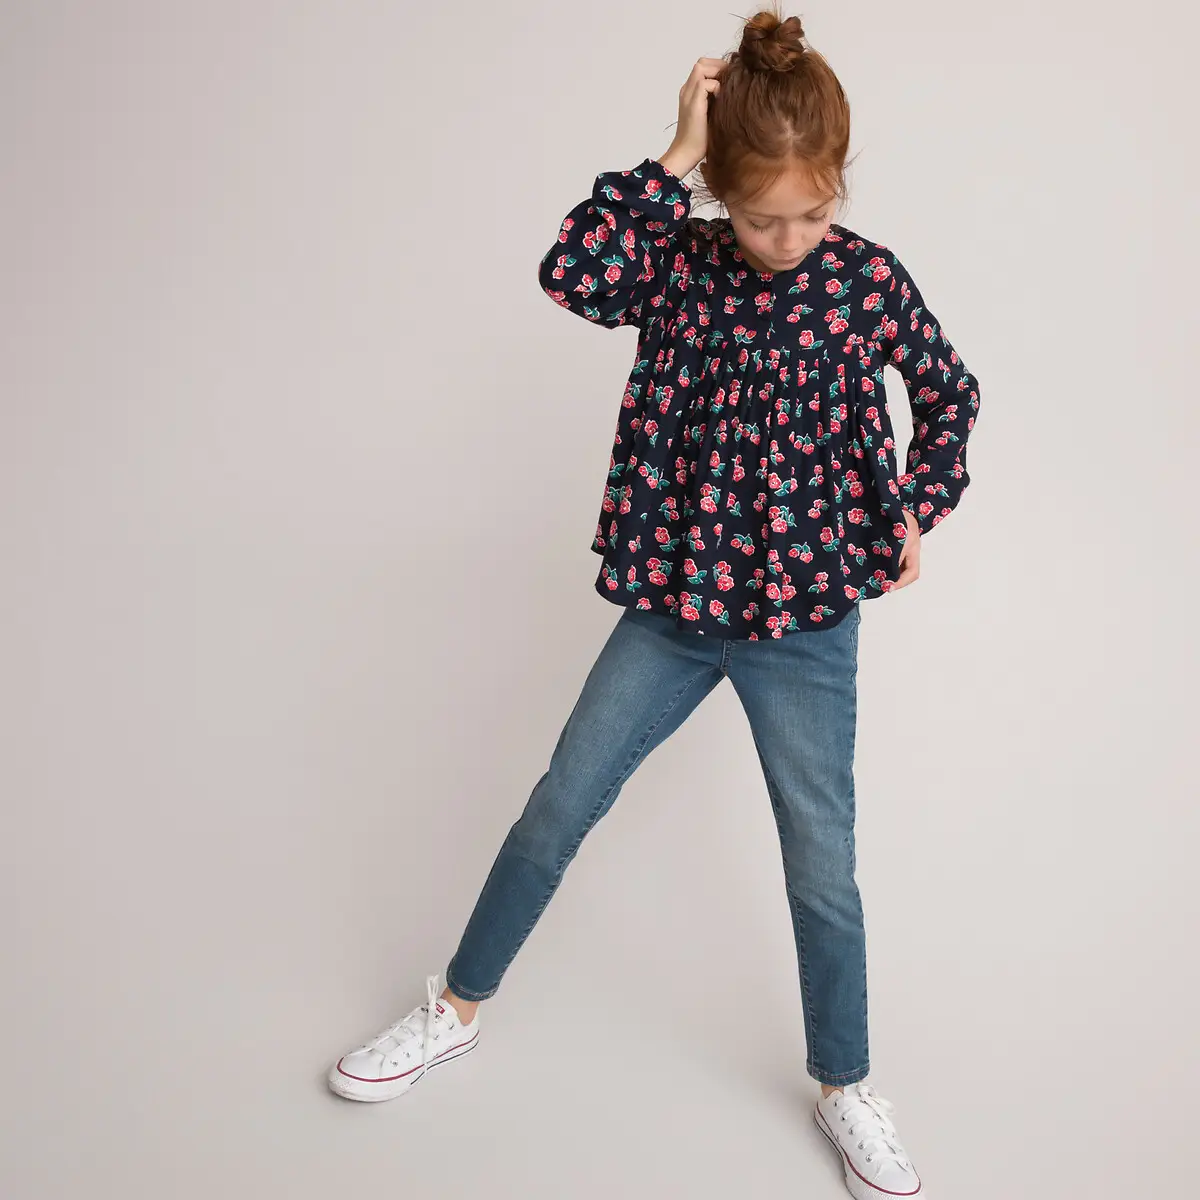 Одежда для девочек 6-14 лет от Super Kids: удобная, модная и разнообразная